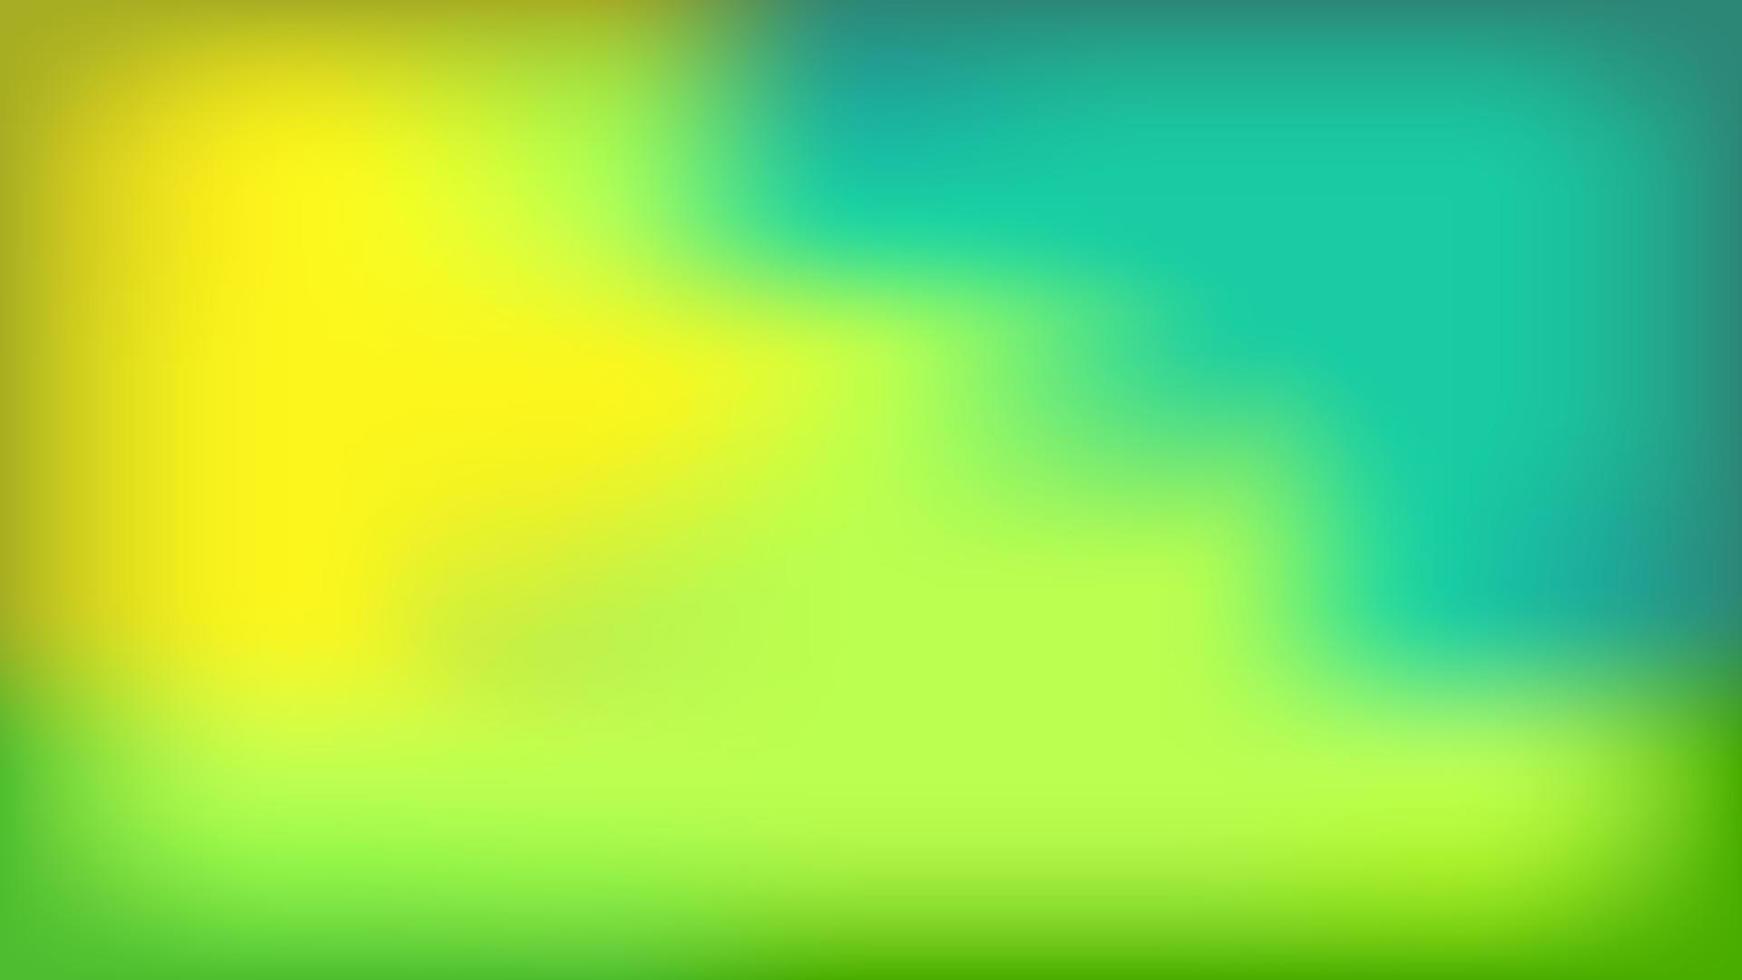 malla degradada con una mezcla de colores verde claro, verde oscuro y  amarillo. fondos abstractos para panfletos, fondos de pantalla, afiches,  páginas de inicio, pancartas y fondos virtuales. 7072453 Vector en Vecteezy